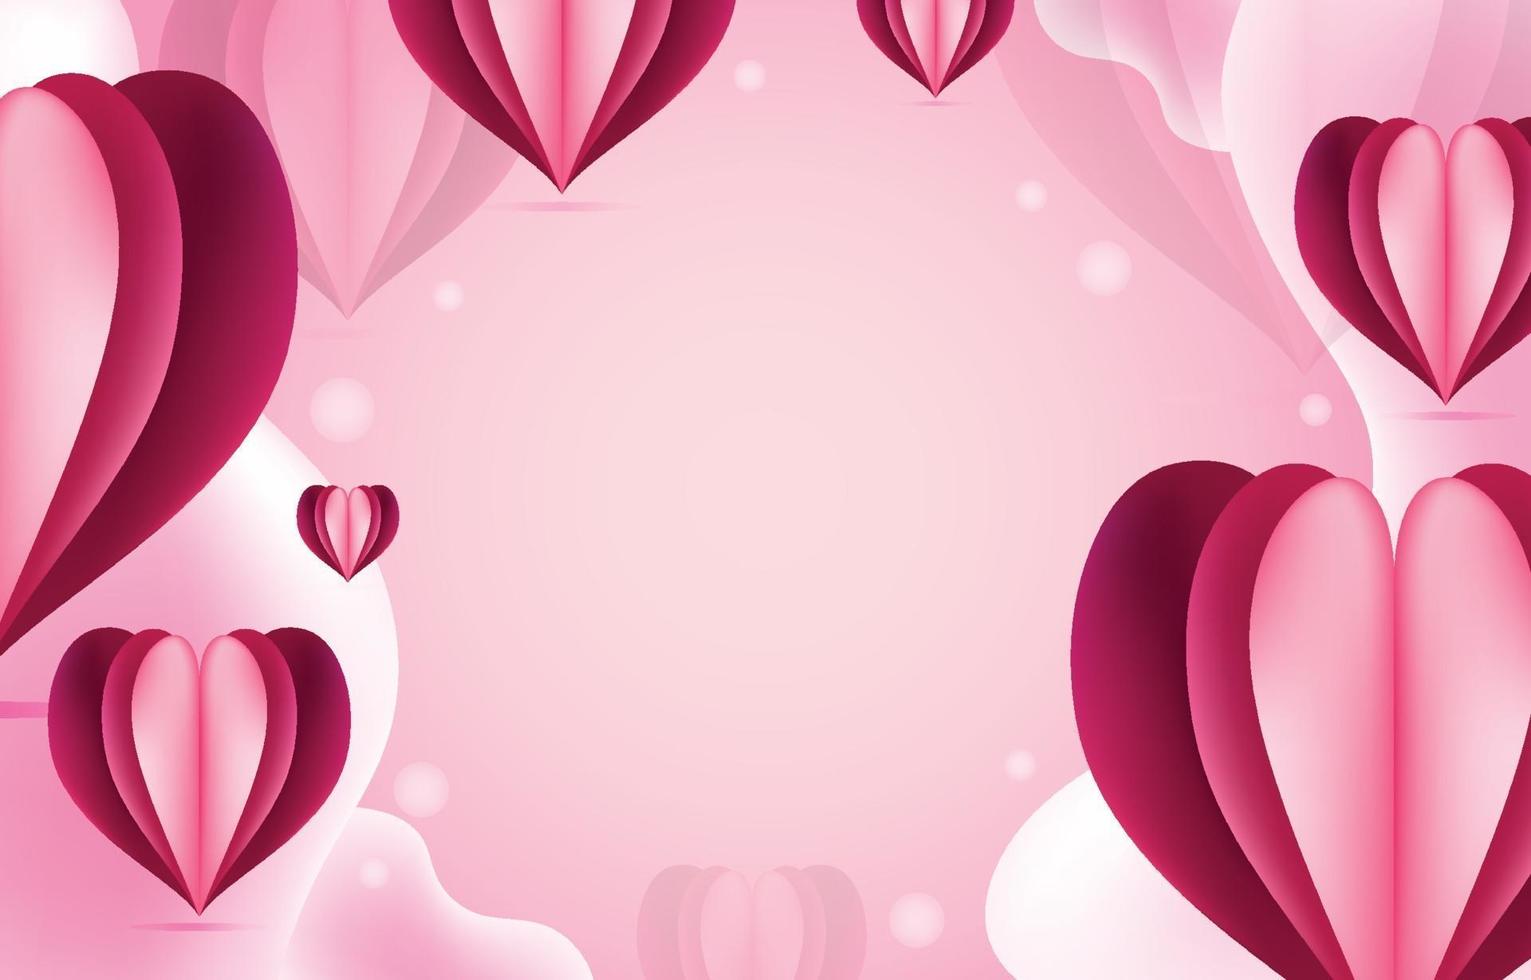 Mẫu hình nền hồng với trái tim chân thực là lựa chọn rất phù hợp cho những người yêu thích màu hồng và muốn tạo nét cá tính riêng cho thiết bị của mình. Hình ảnh trái tim cực kỳ đẹp mắt và ấn tượng sẽ khiến bạn cảm thấy yêu thích ngay từ cái nhìn đầu tiên.